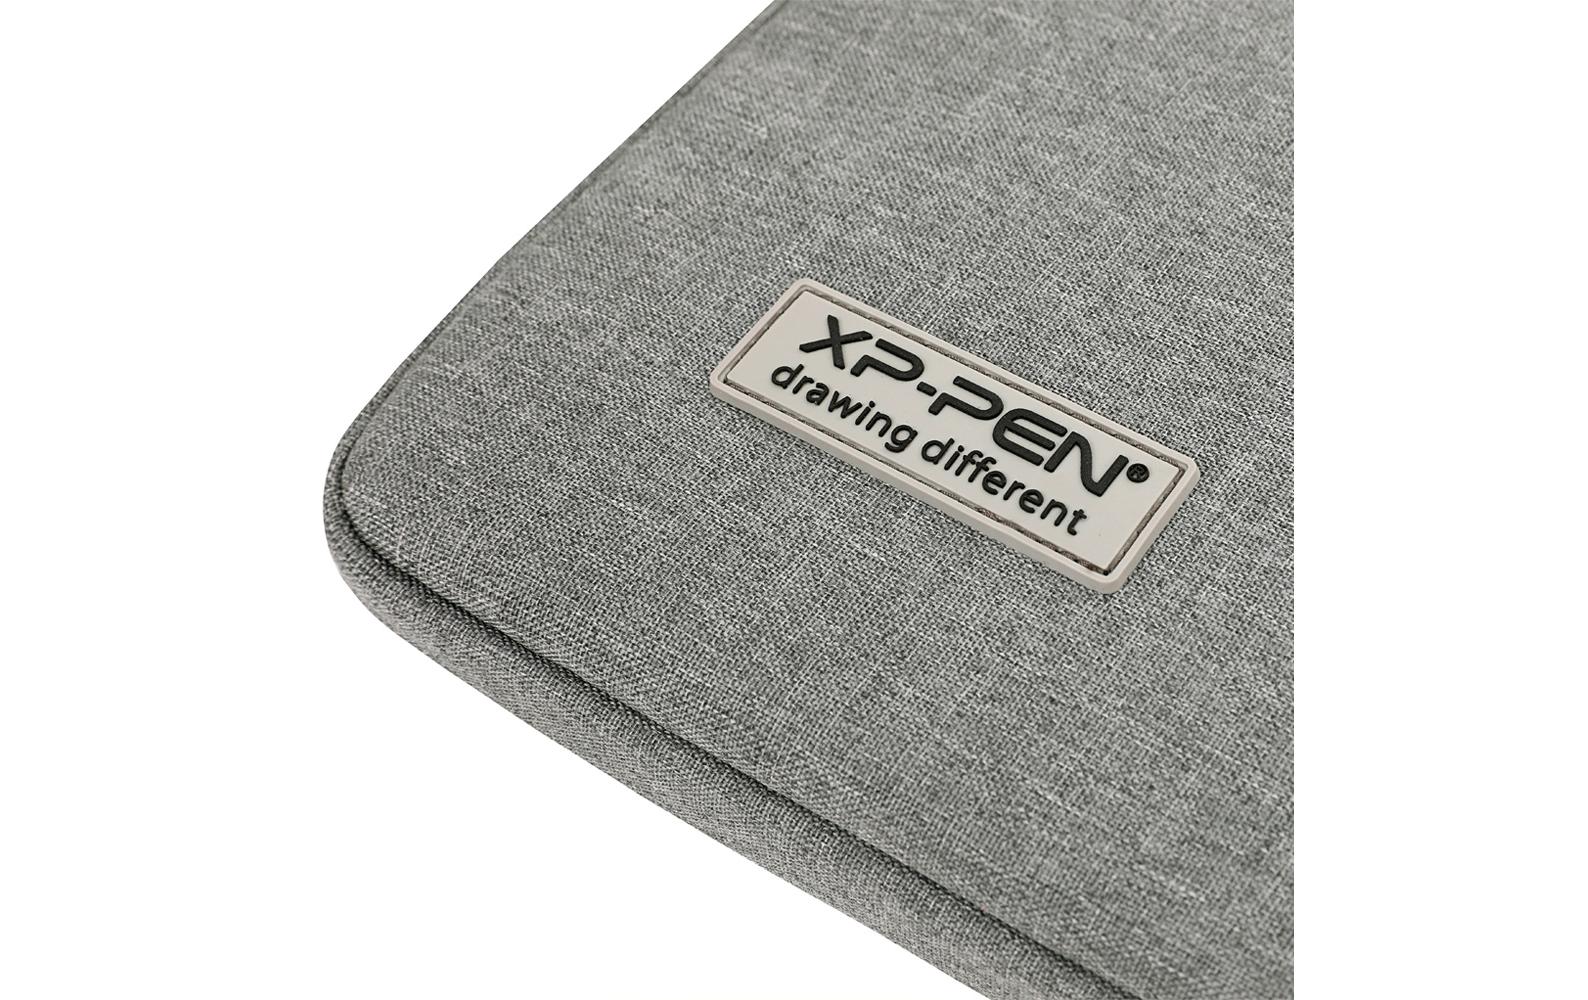 XP-PEN Tablet Sleeve ACJ01 for Artist 15.6 Pro / 12 Pro 15.6